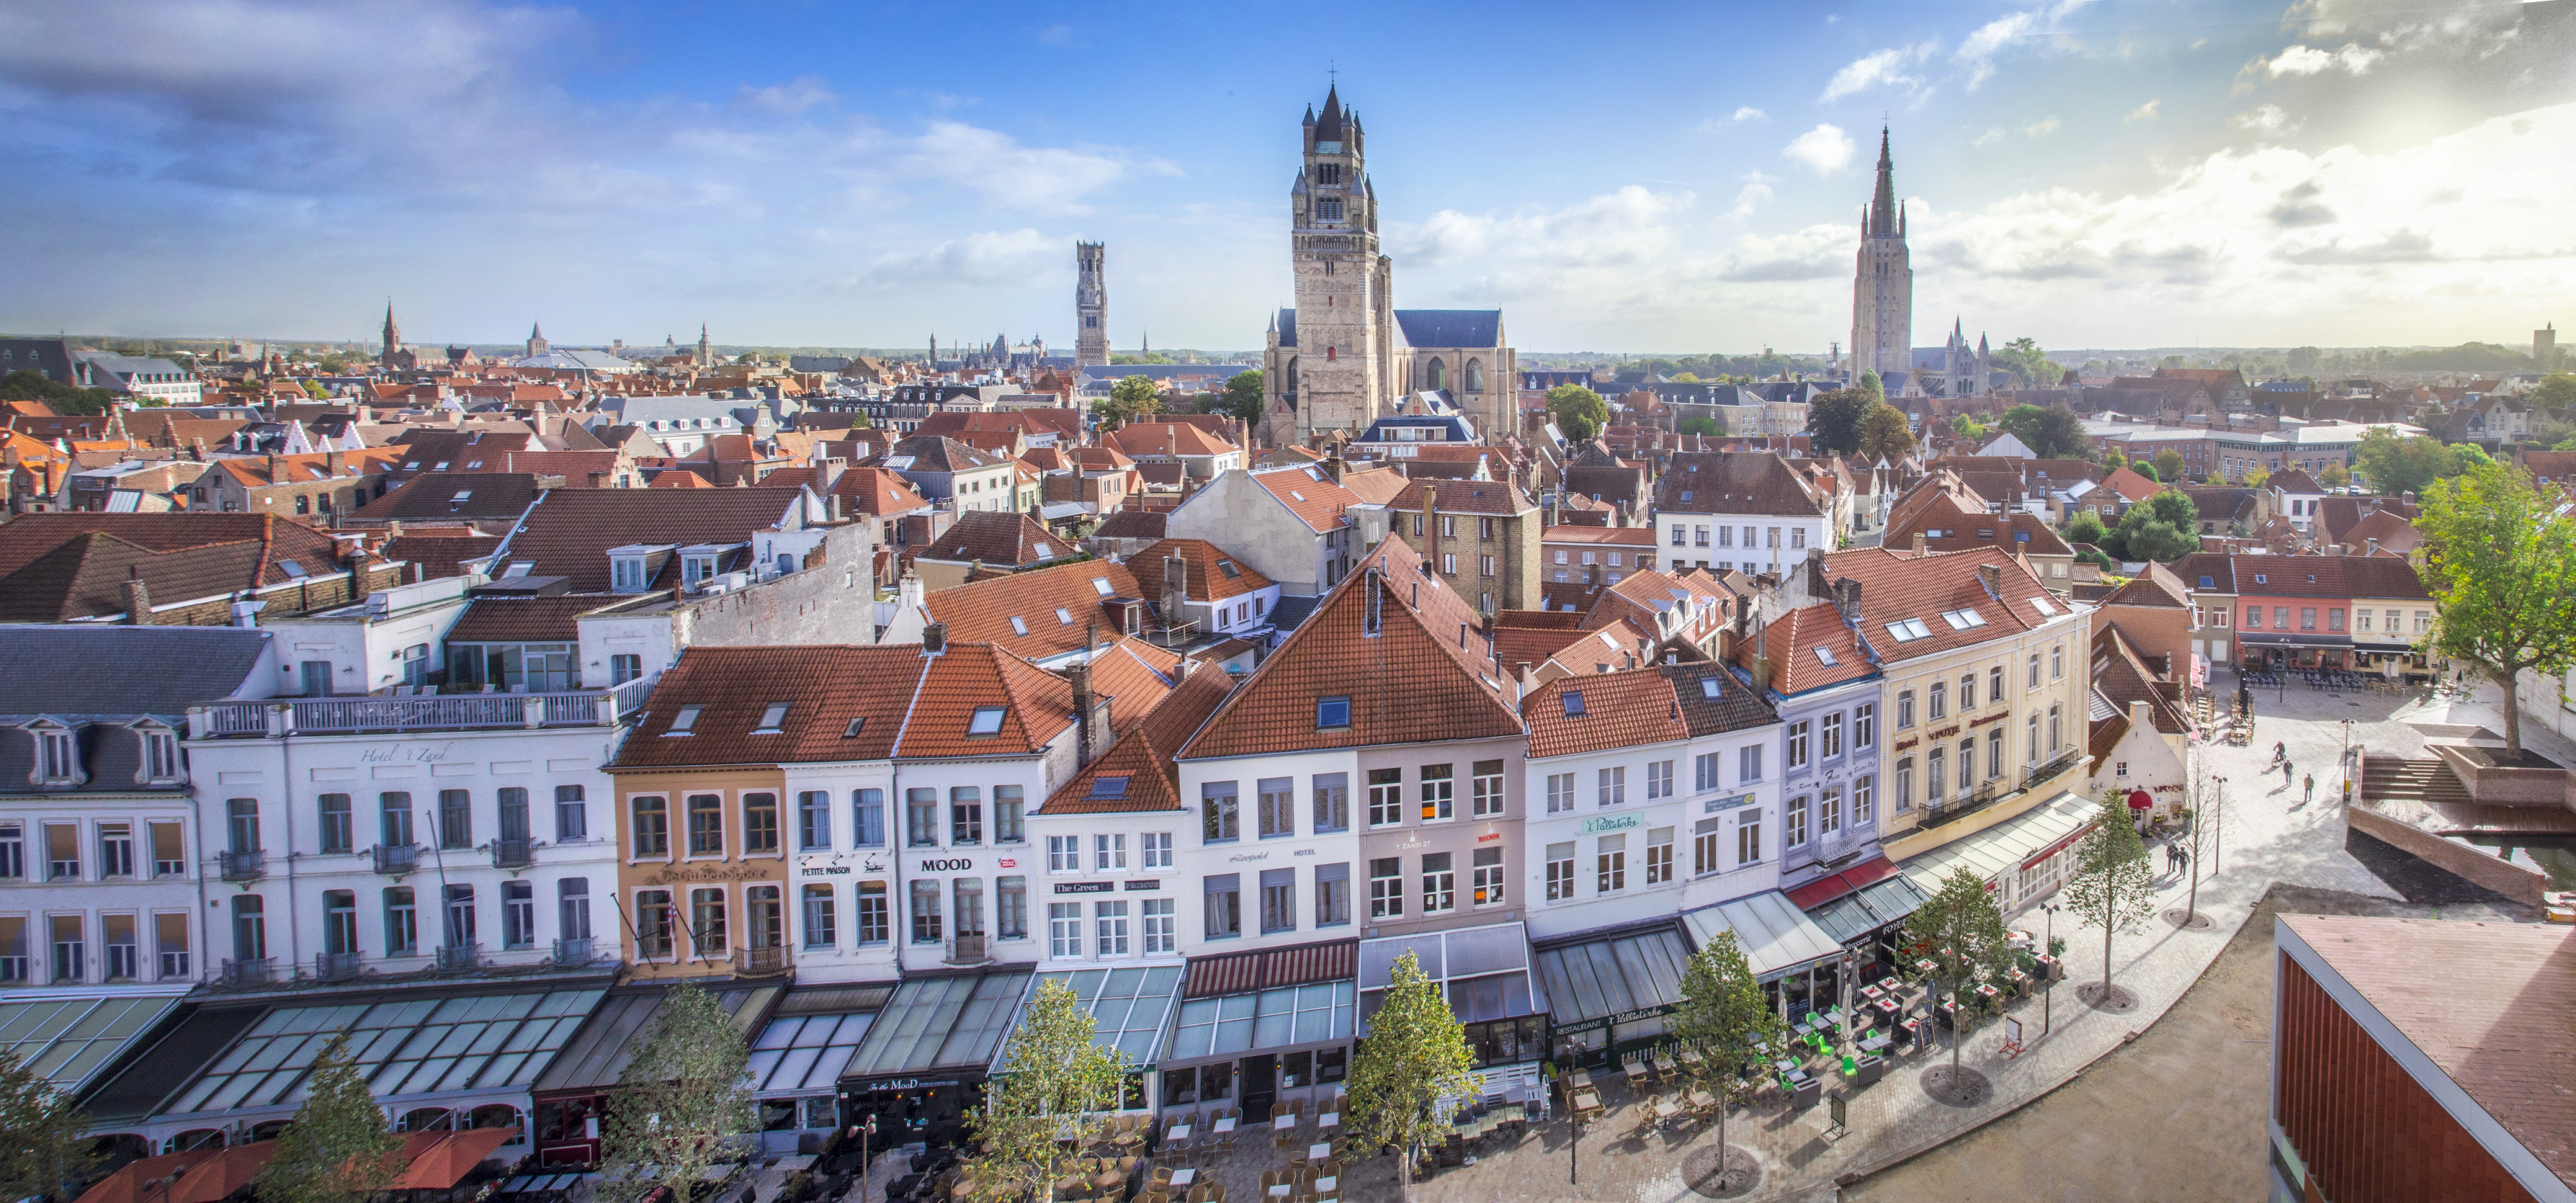 Brugge ©JanDhondt